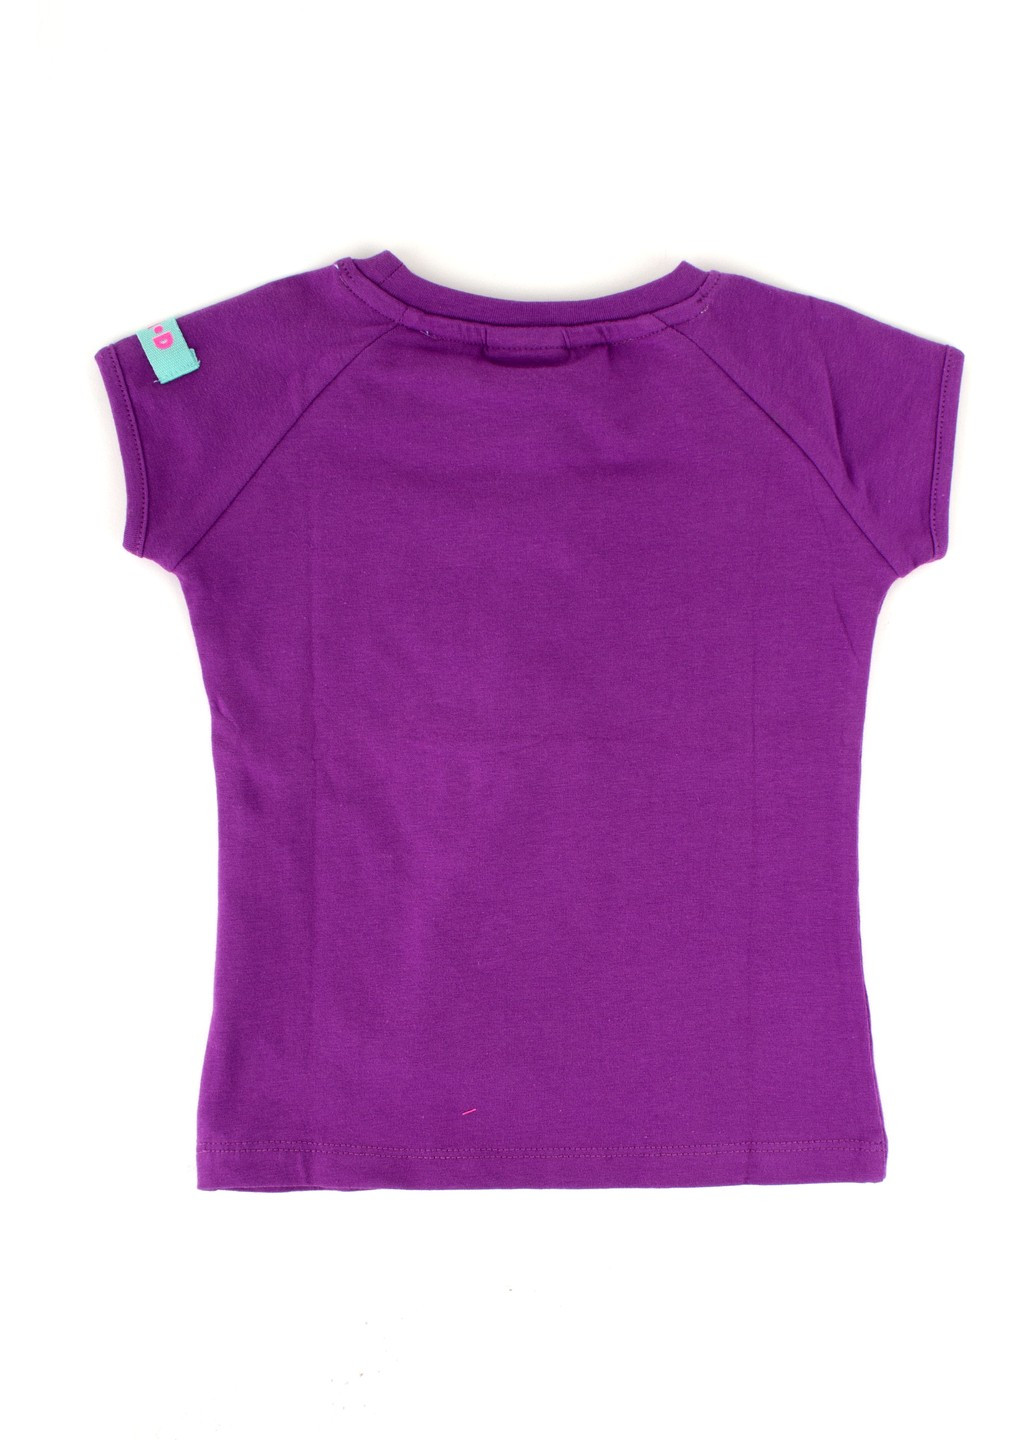 Фиолетовая футболка на девочку фиолетовая tom-du с пайетками ананас TOM DU